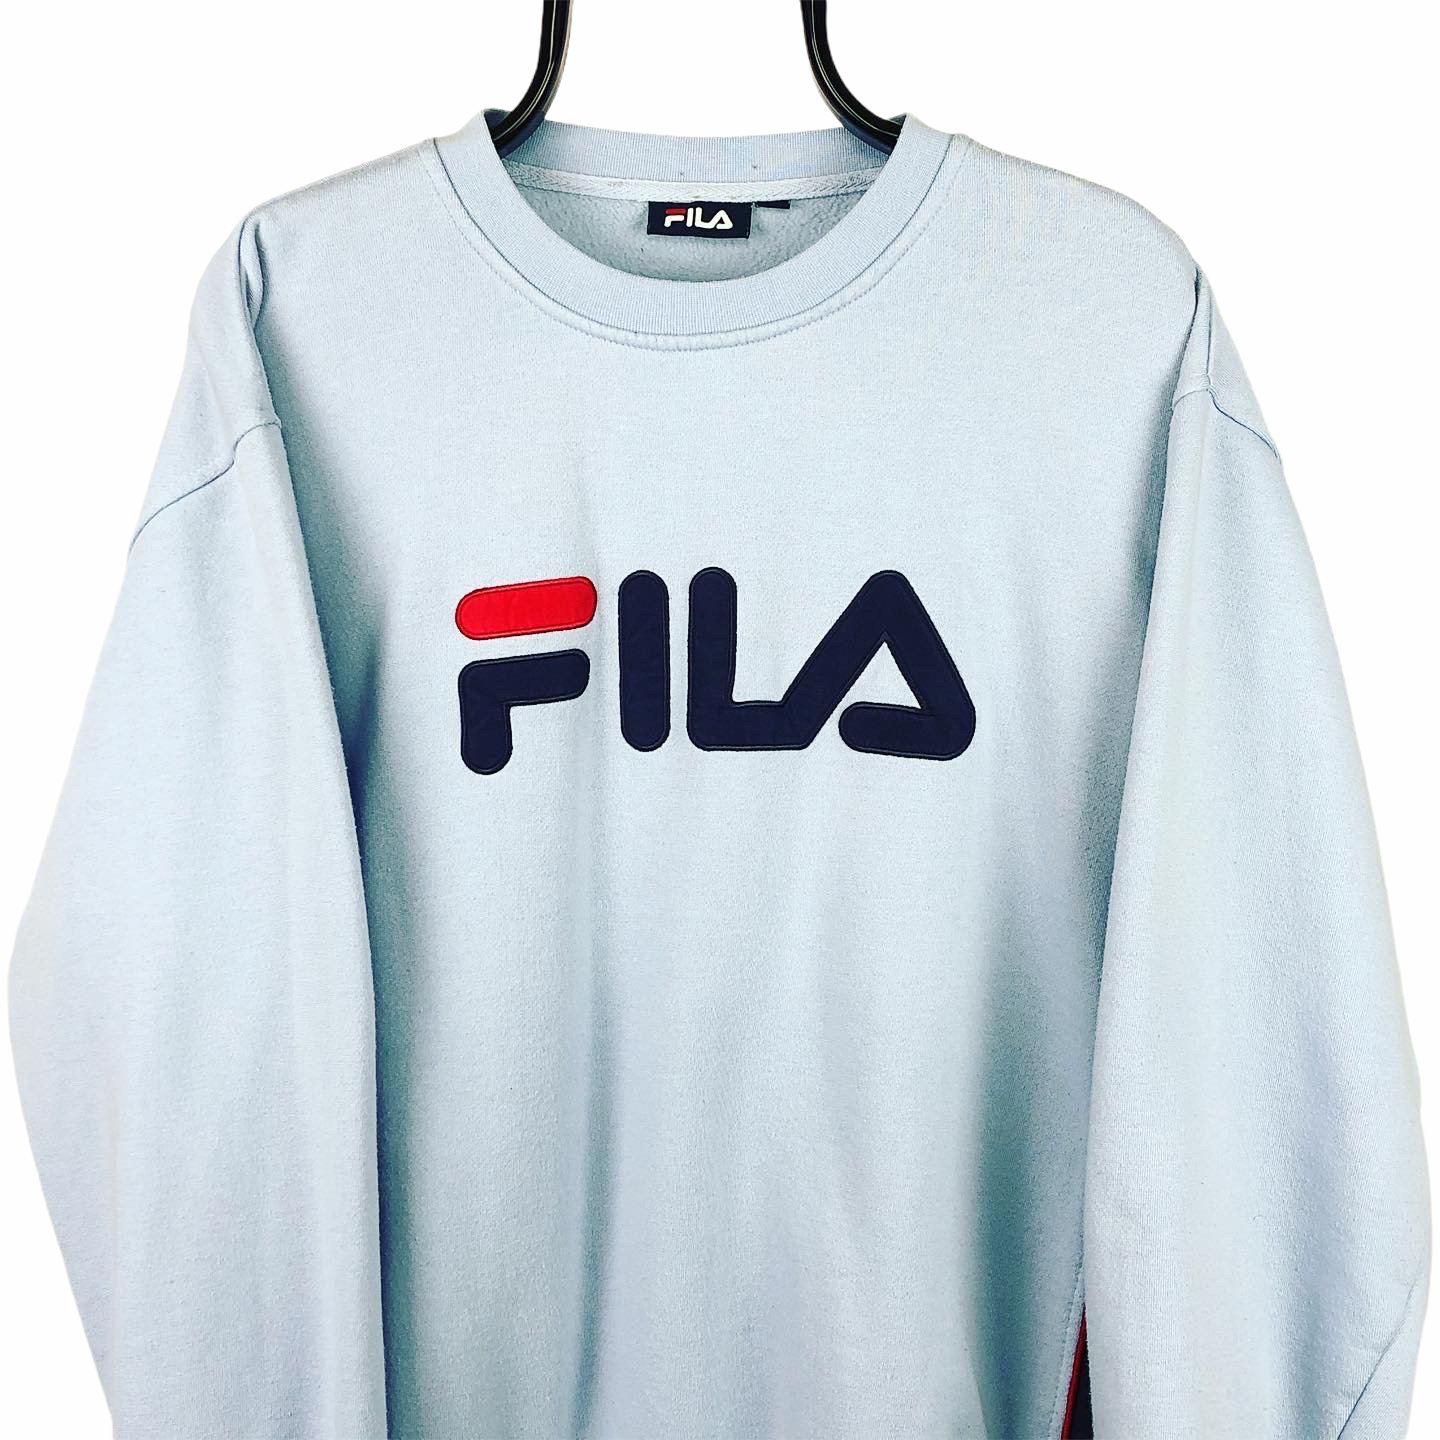 Fila Spellout Sweatshirt in Baby Blue - Men's Large/Women's XL